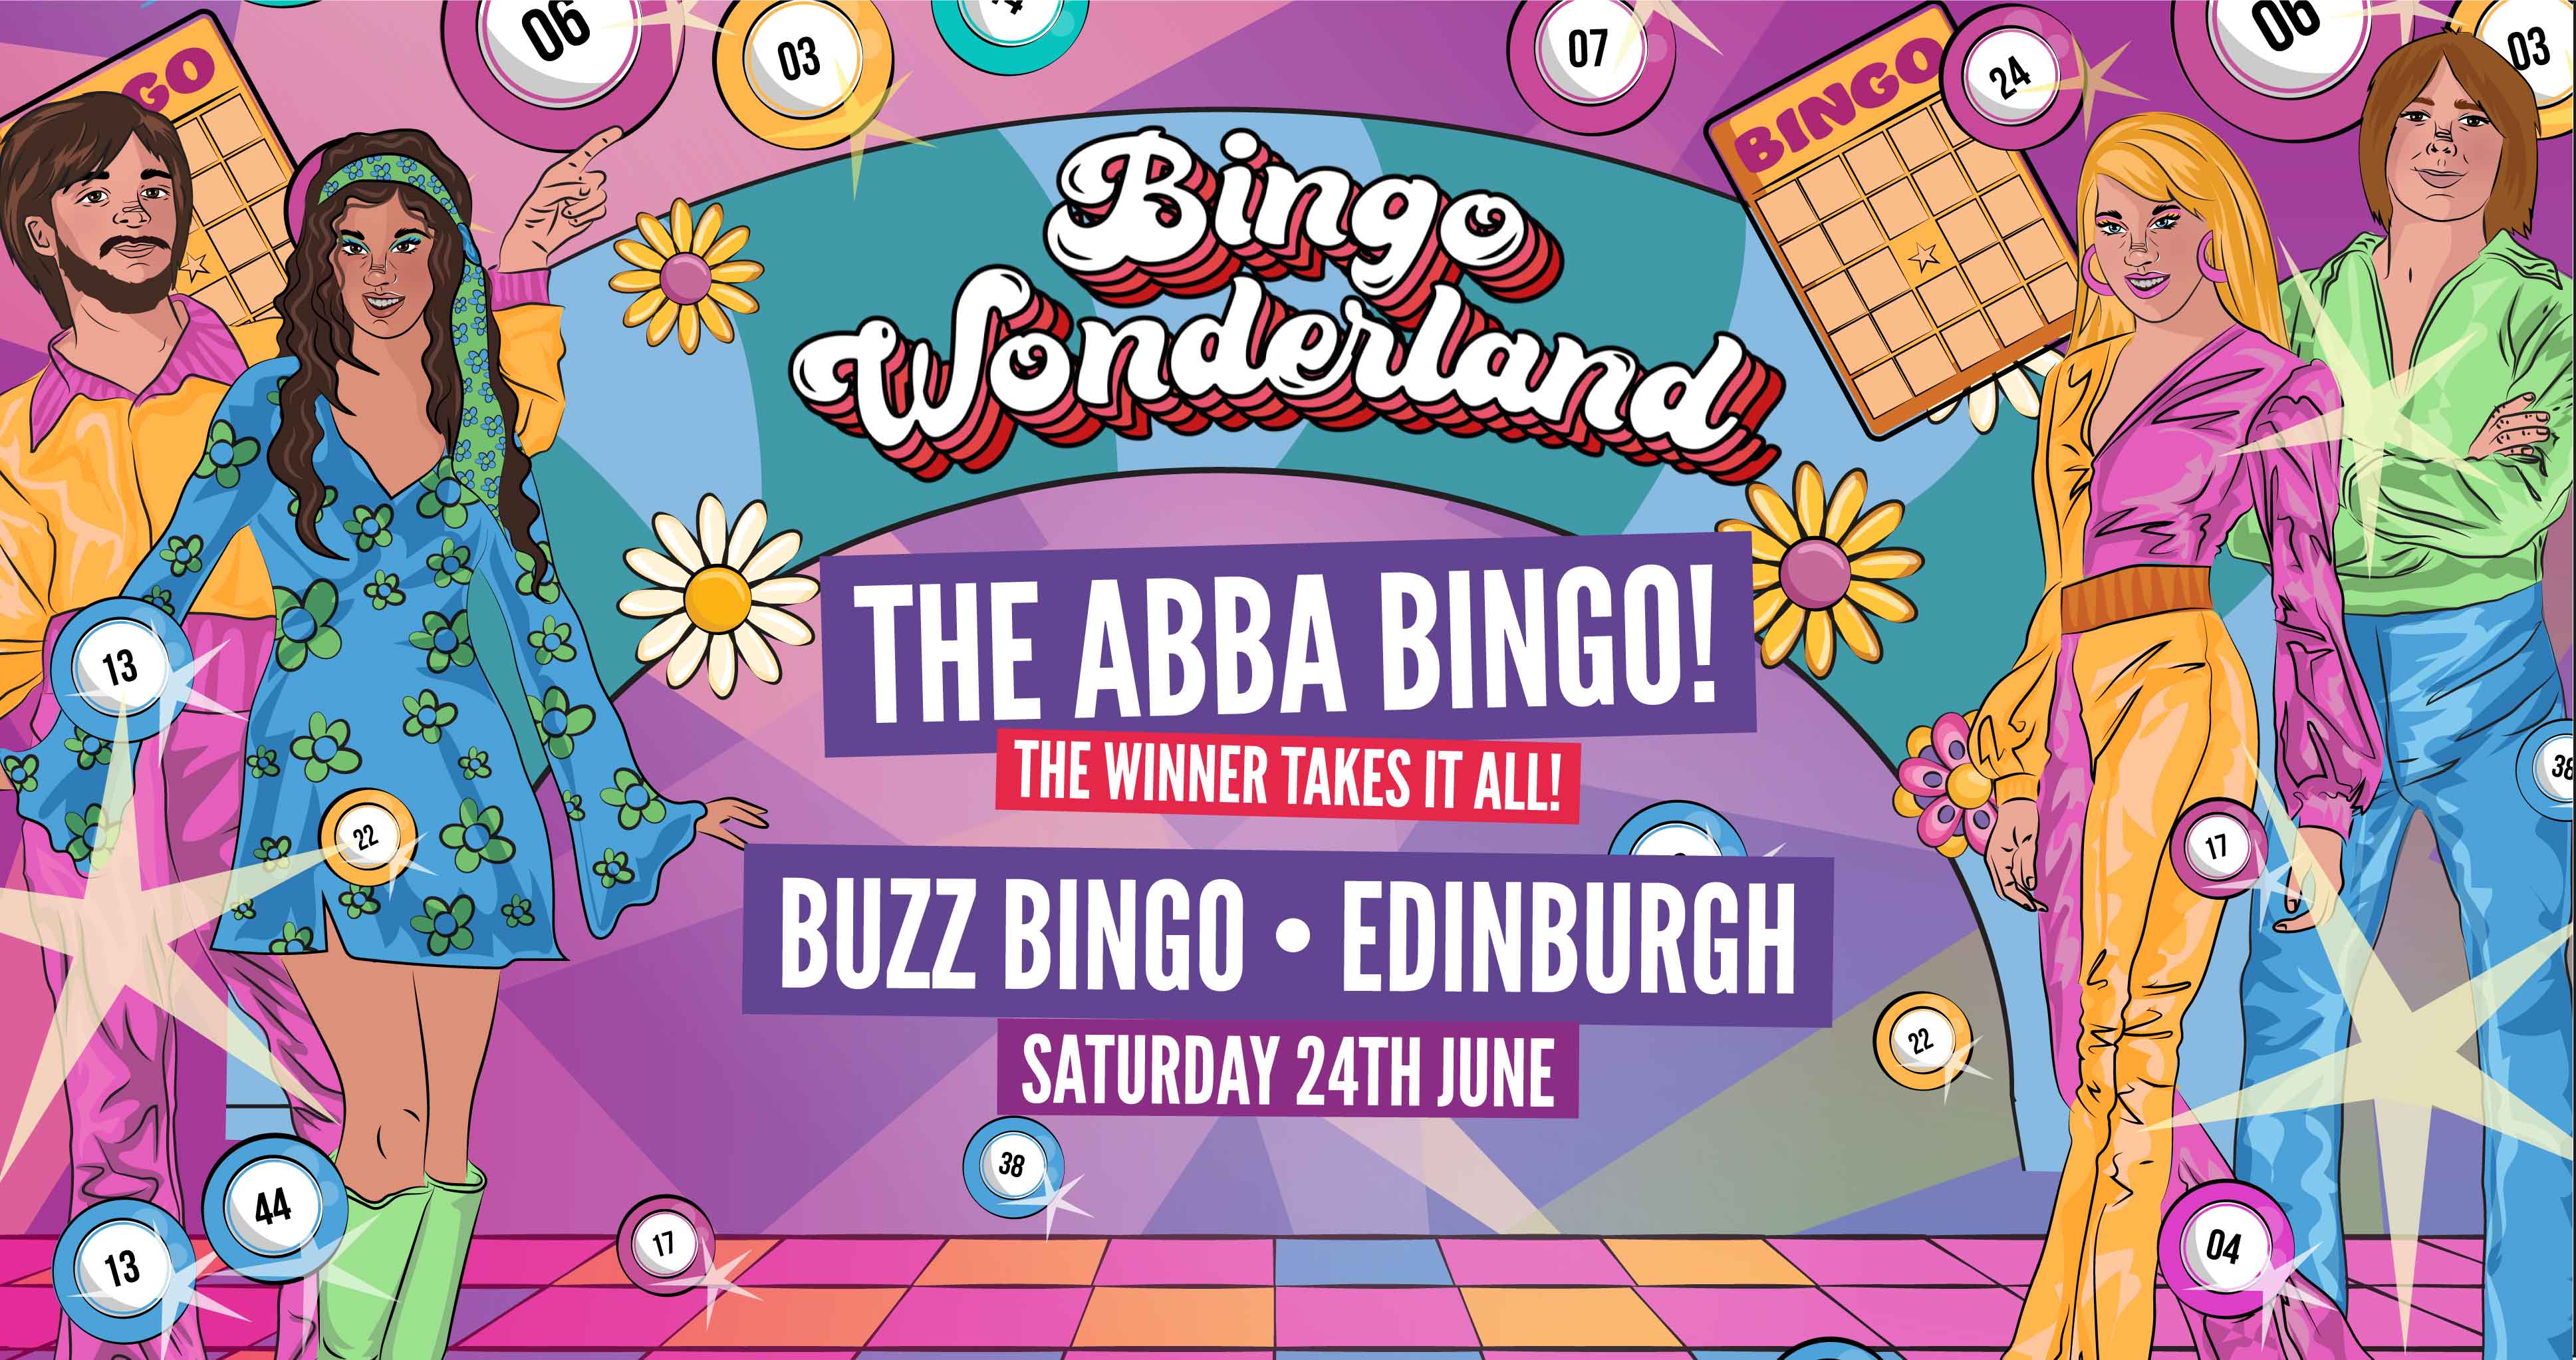 Abba Bingo Wonderland Edinburgh At Buzz Bingo Meadowbank Edinburgh On